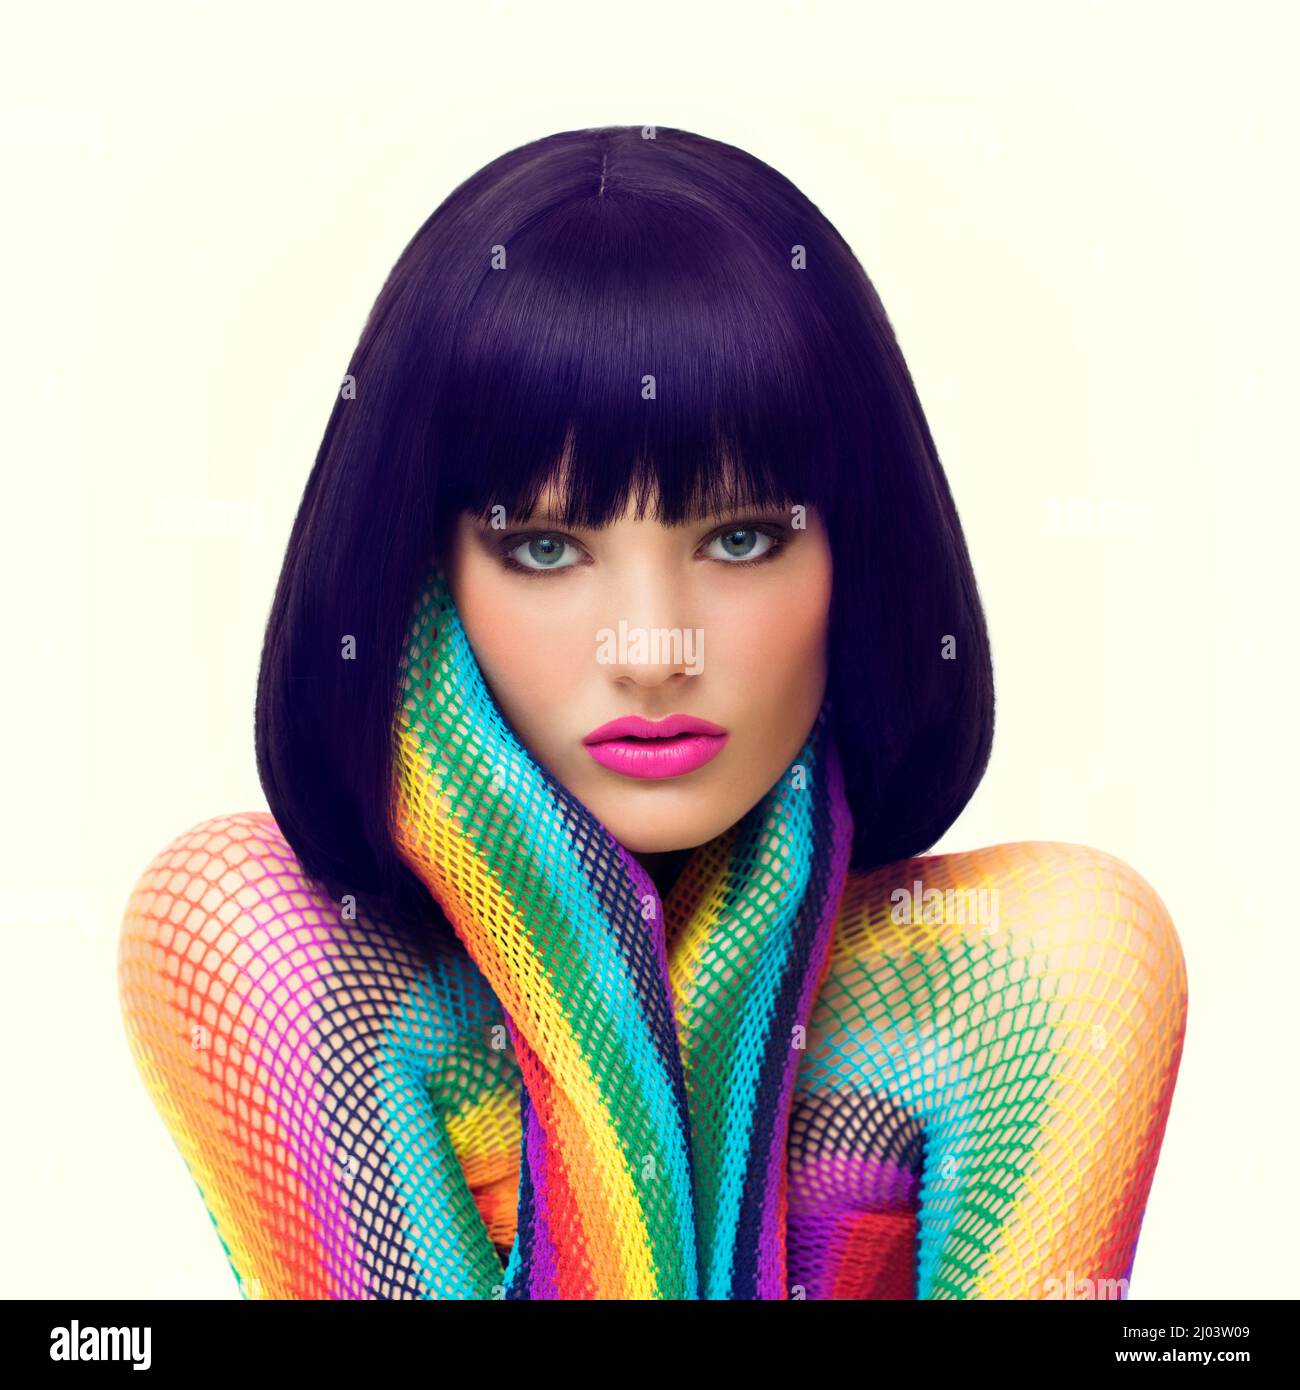 Elektrisierende Disco-Schönheit. Studioaufnahme einer schönen jungen Frau in farbenfroher Kleidung und Make-up. Stockfoto